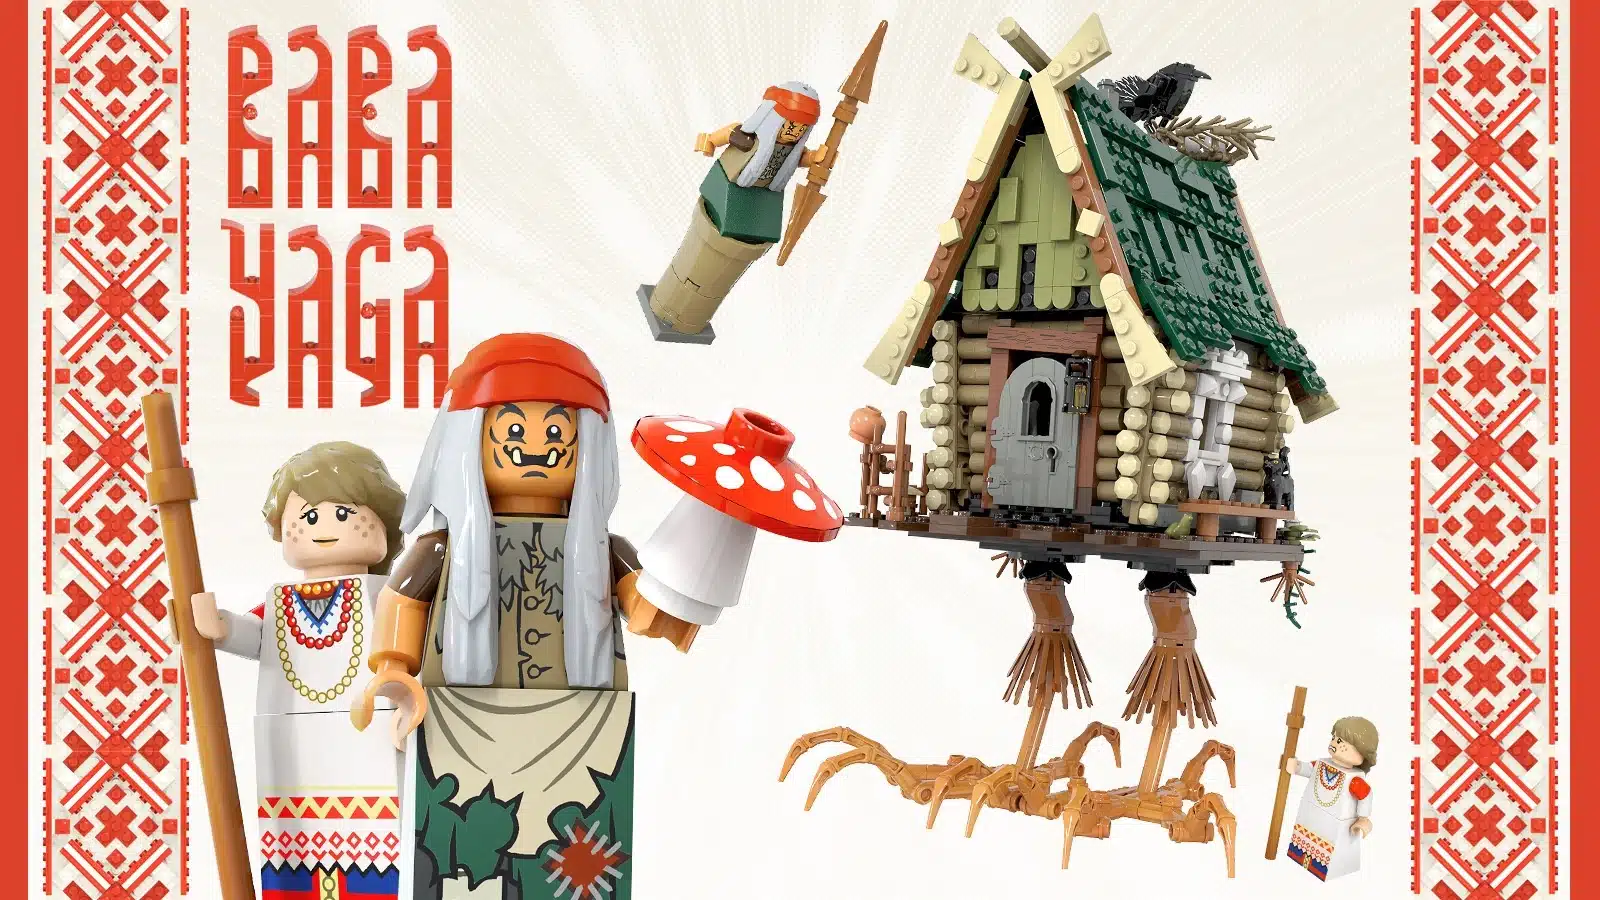 В России выпустили своё Lego с избой, царём и печью